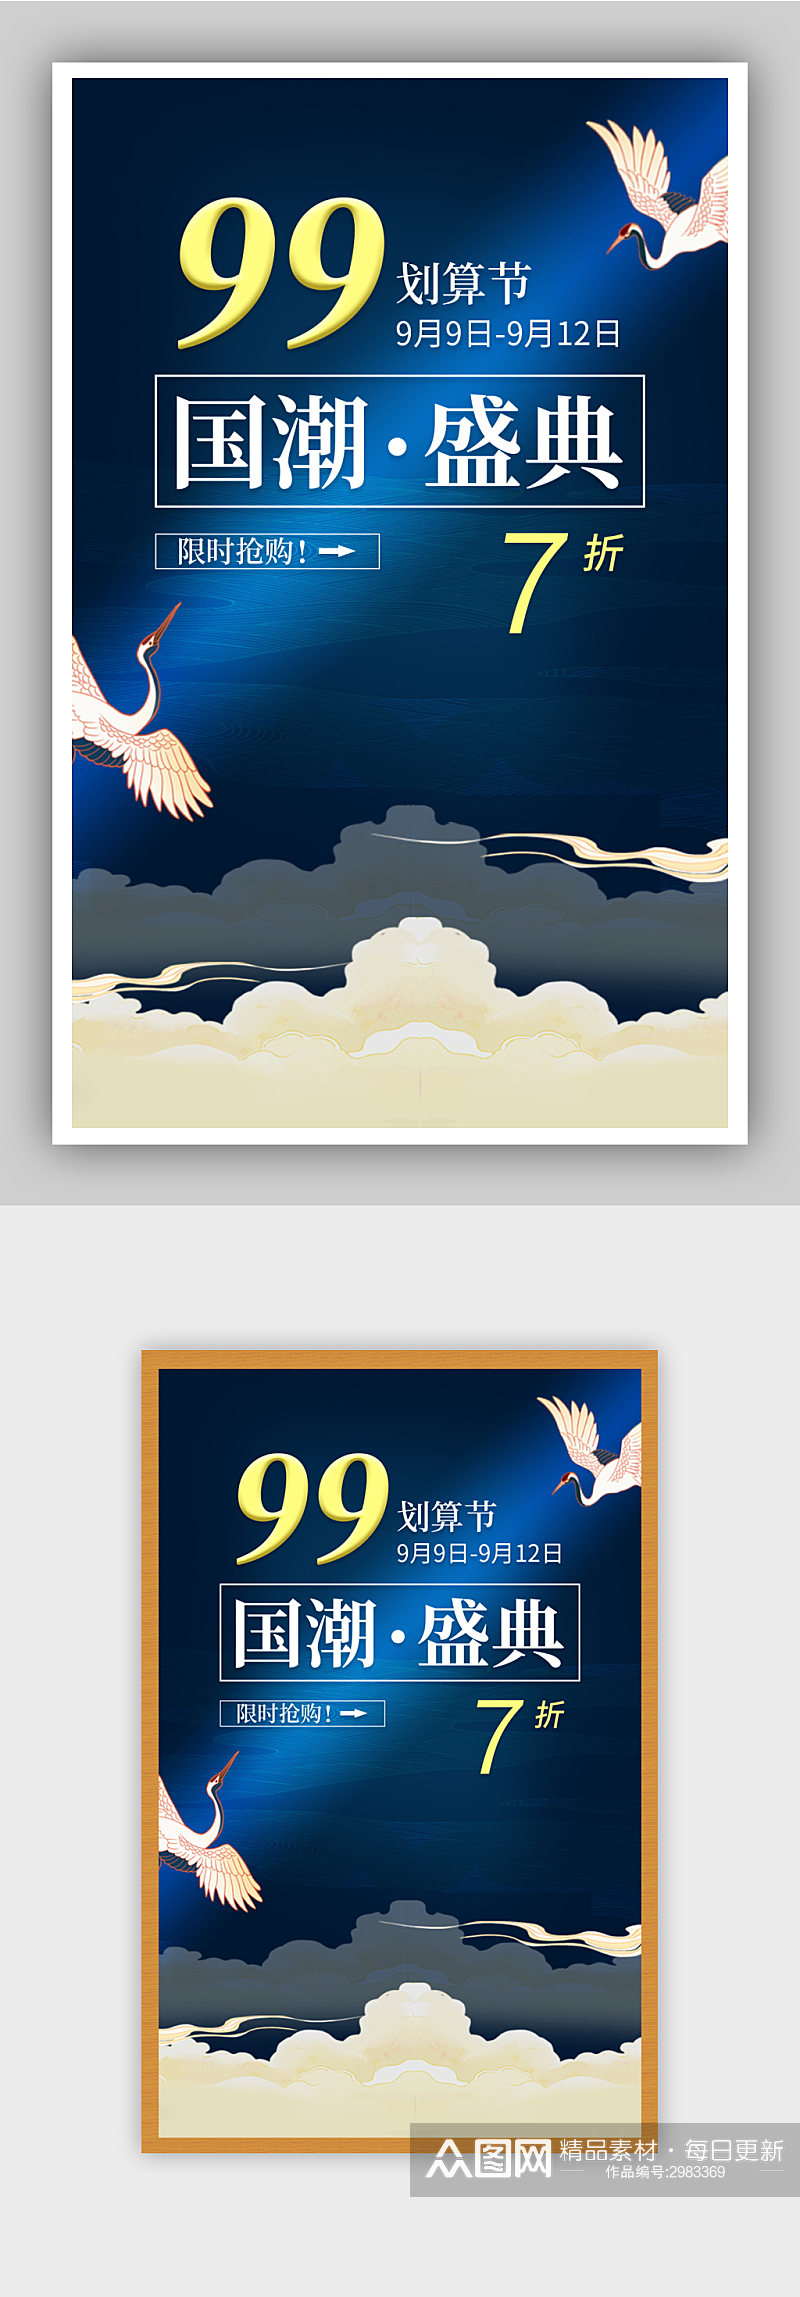 99促销中国风节日海报素材